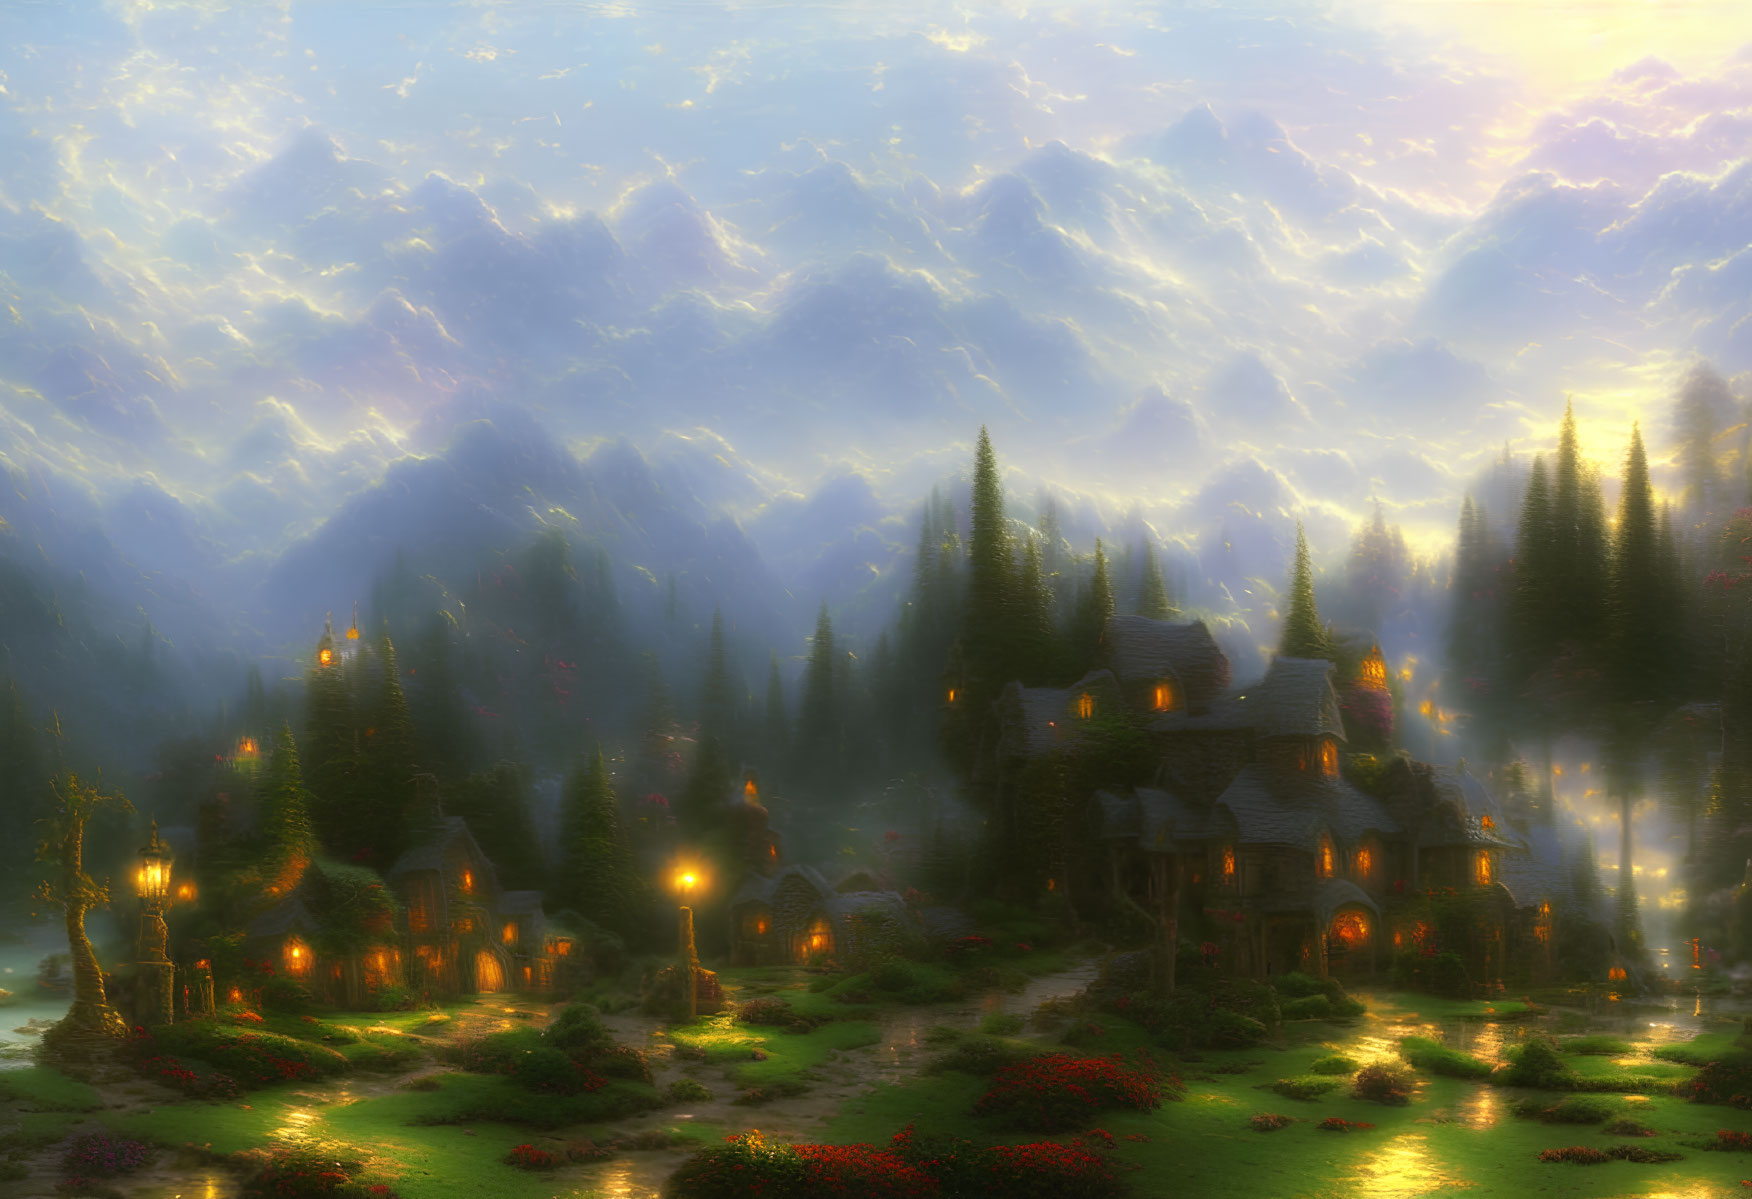 Enchanting fantasy village in forest at dusk